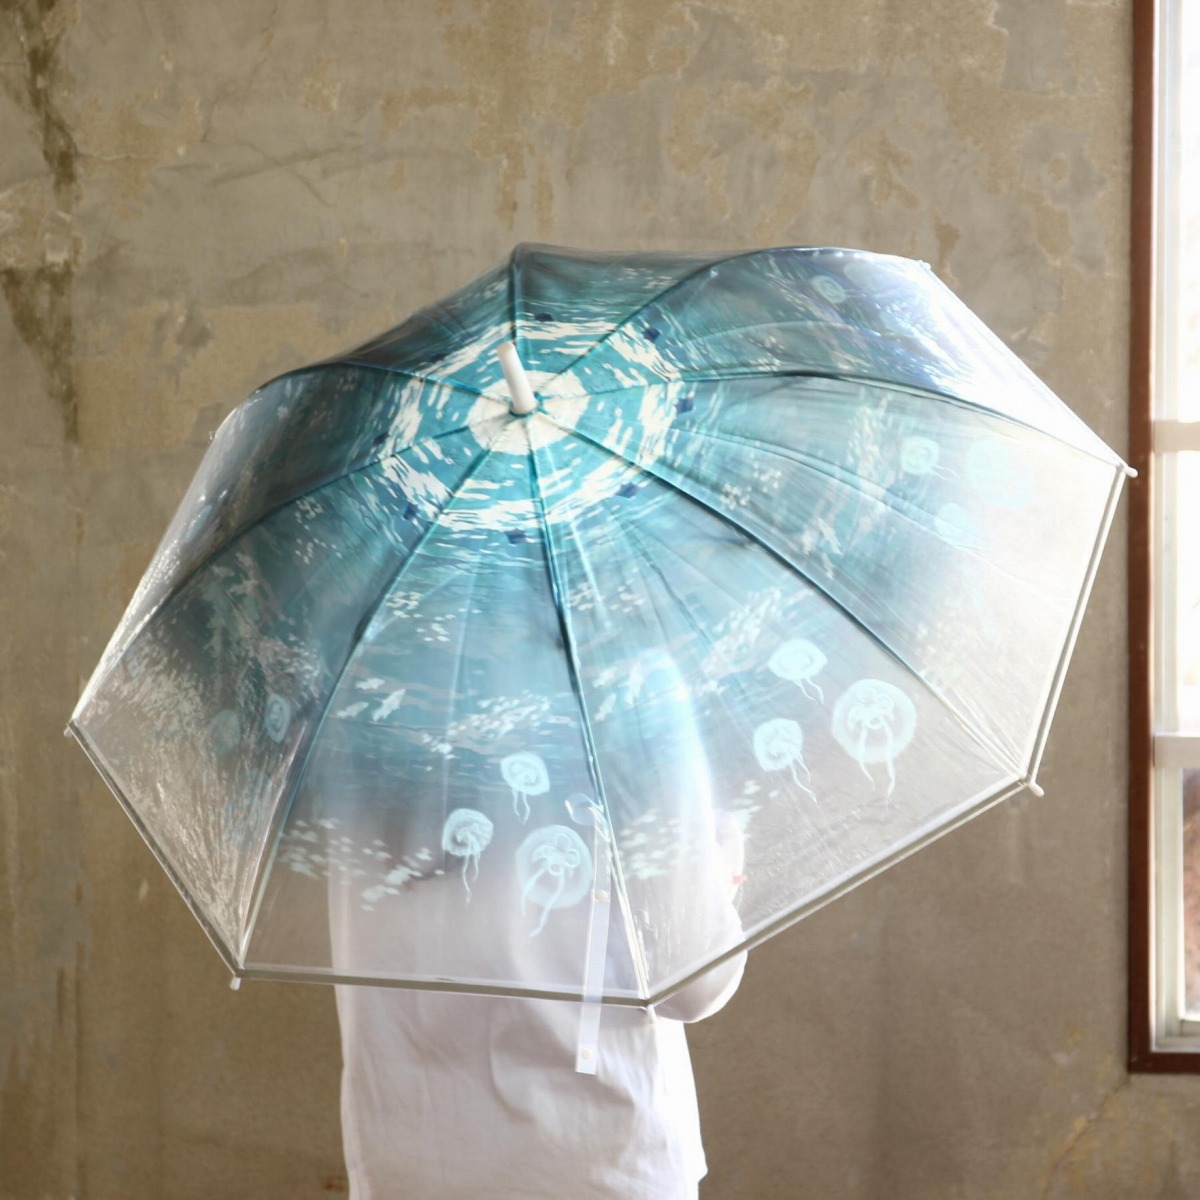 ハッピークリアアンブレラ オーシャン 雨傘 かさ かわいい おしゃれ 雨対策 梅雨対策 通勤 通学 アウトドア(代引不可)【送料無料】